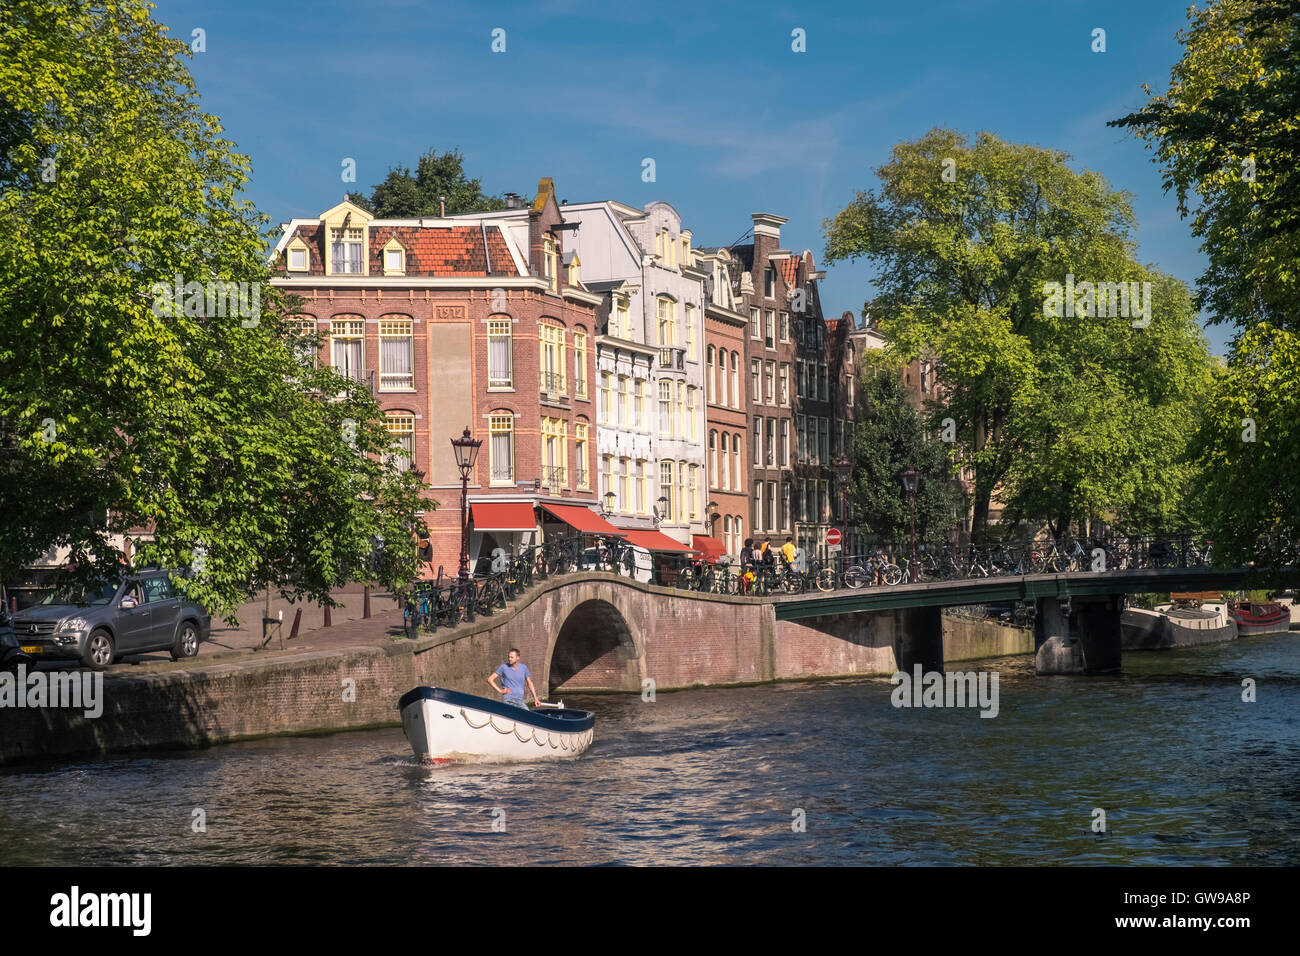 Kleines Boot auf der Prinsengracht Kanal, Amsterdam, Niederlande. Stockfoto